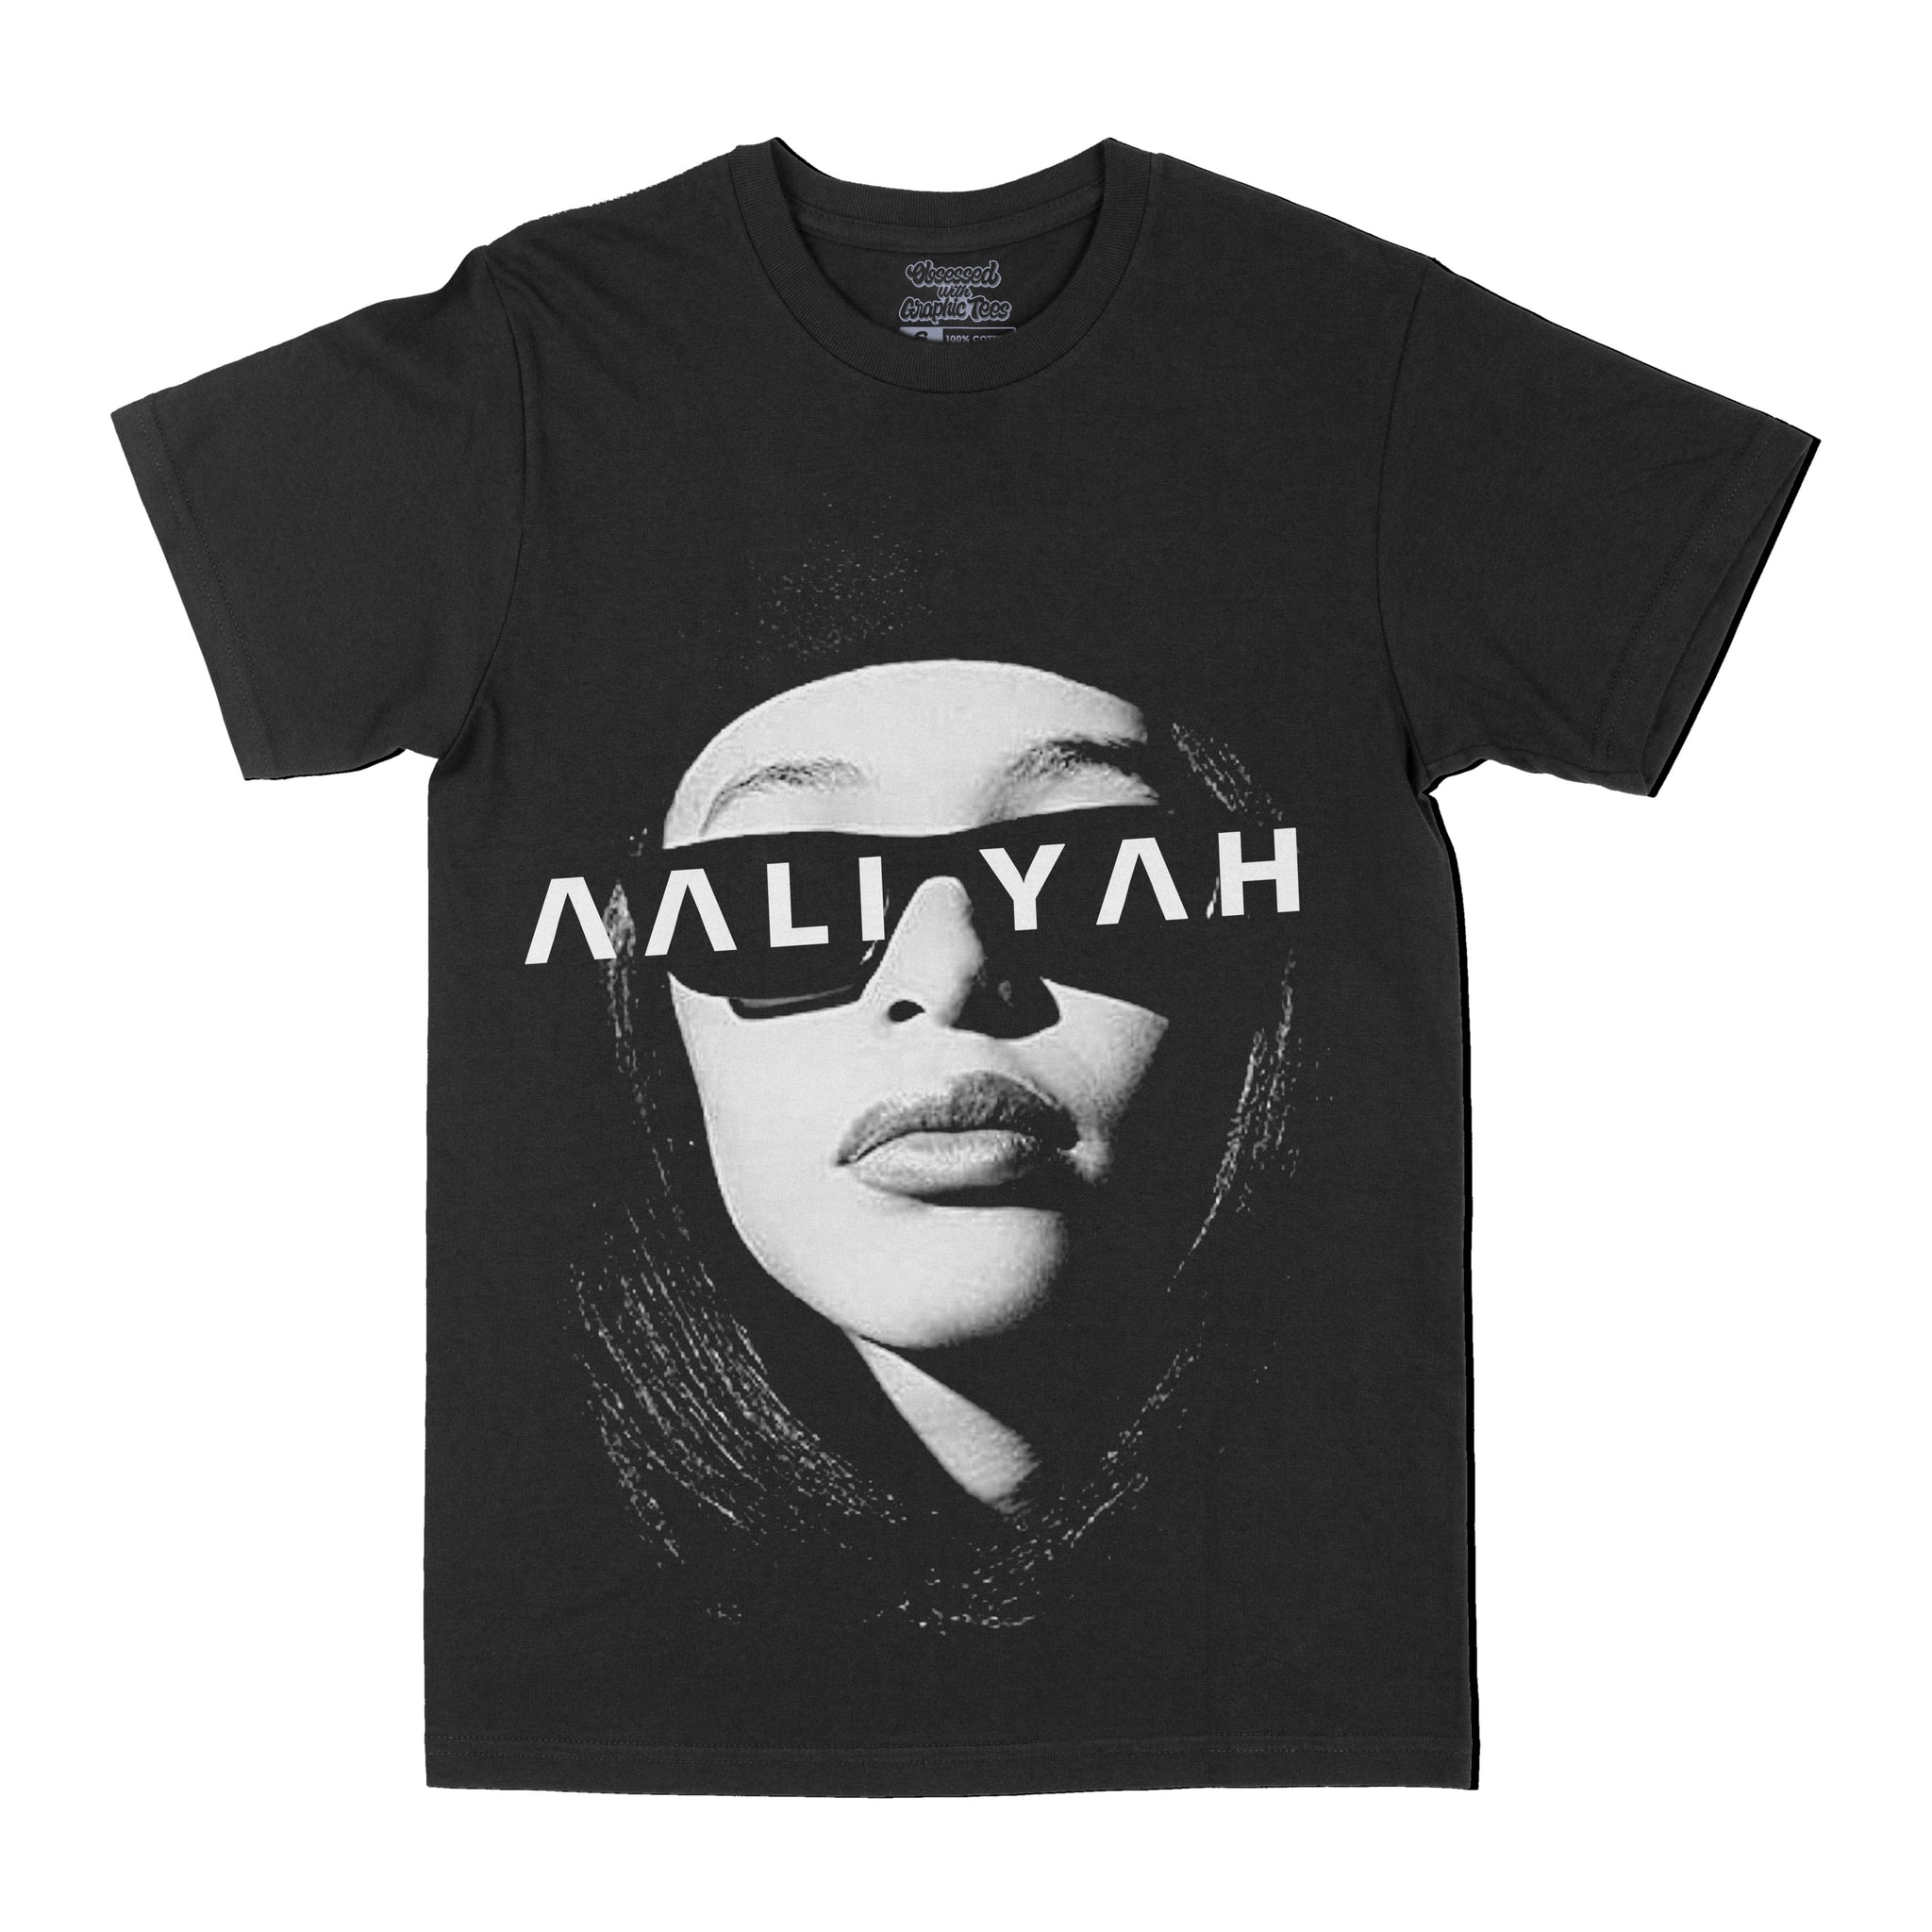 Aaliyah "Shades" Graphic Tee